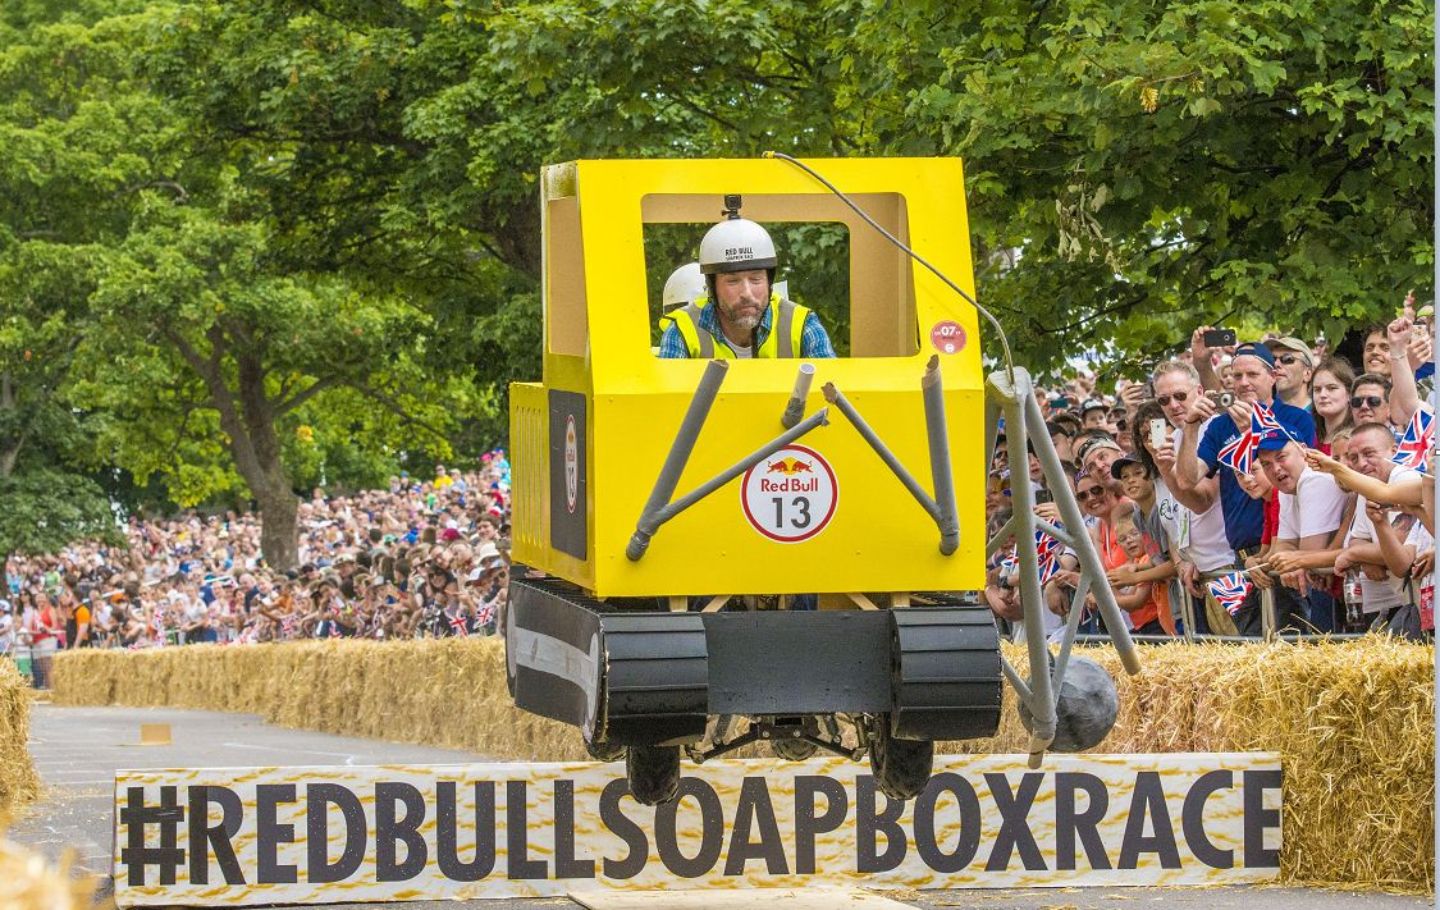 Red Bull Sopabox Race